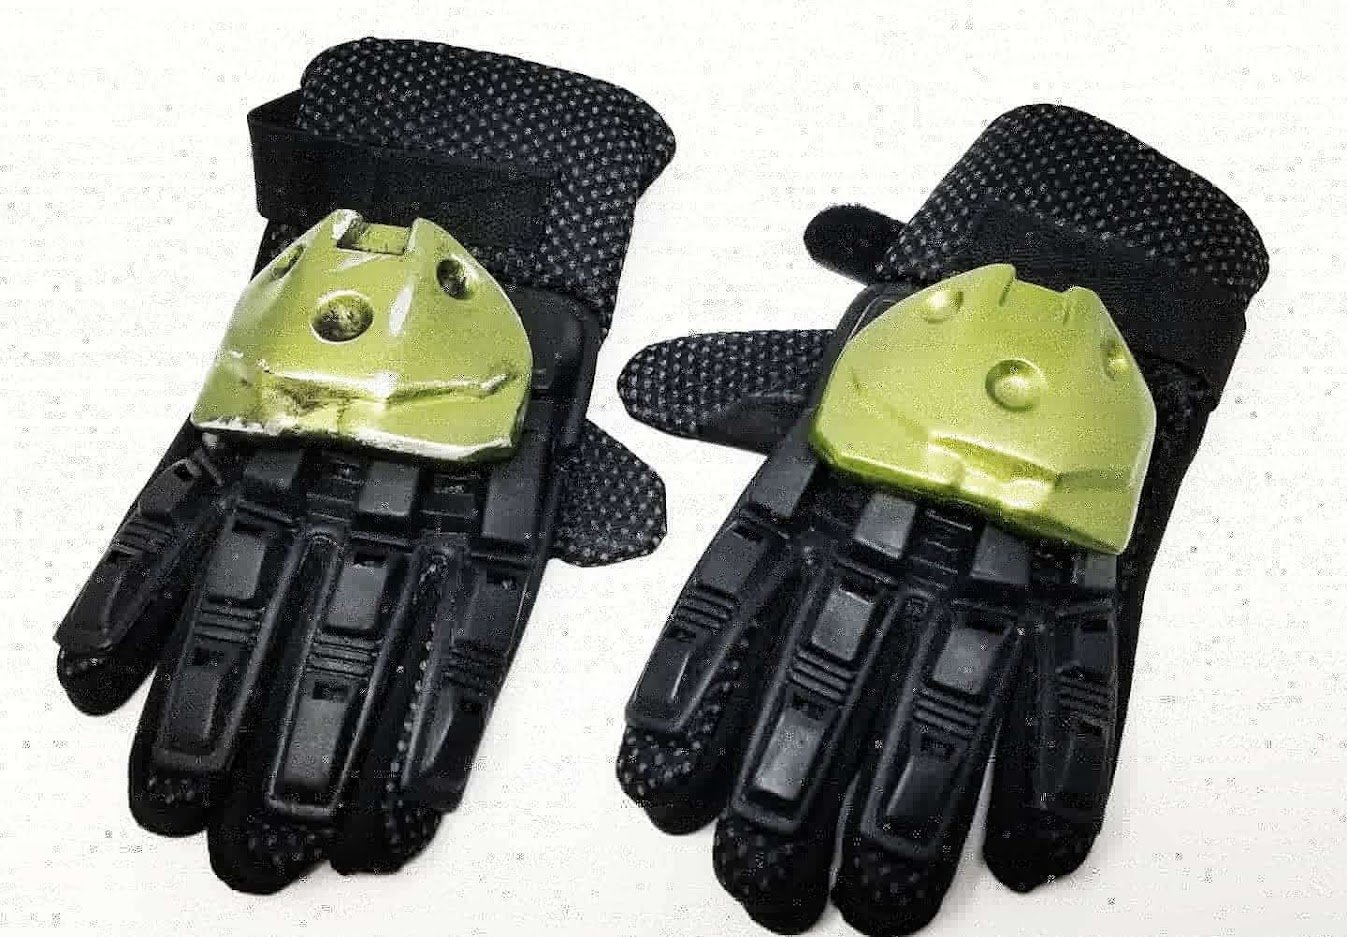 Halo Reach Gloves